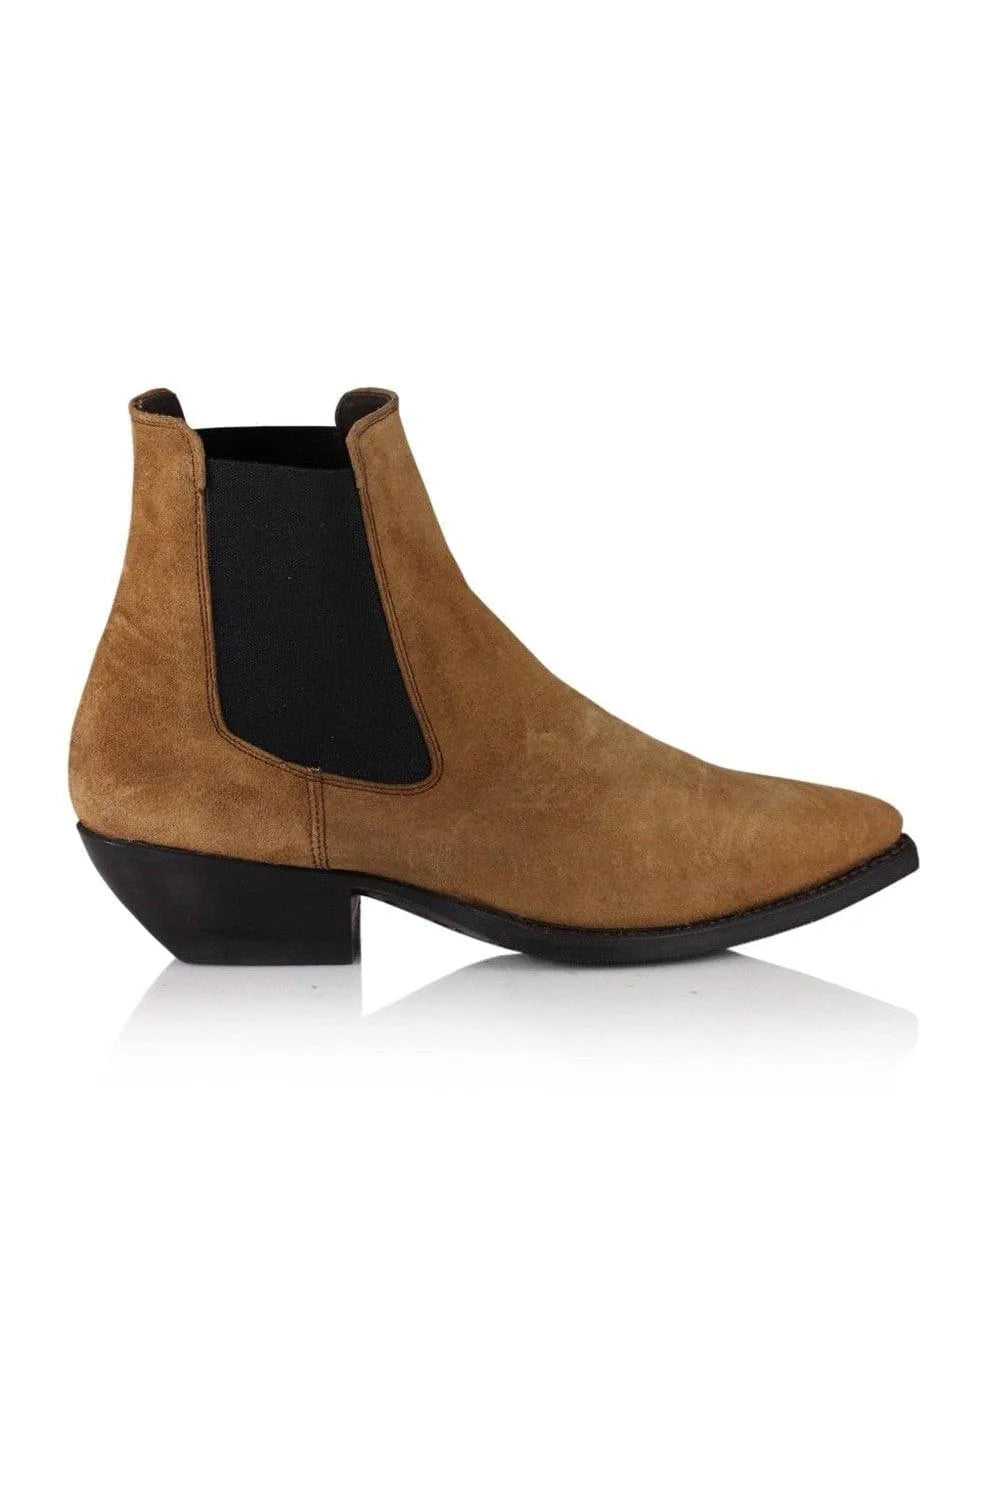 Notabene | Ankelstøvler | Cordova Boots, brun